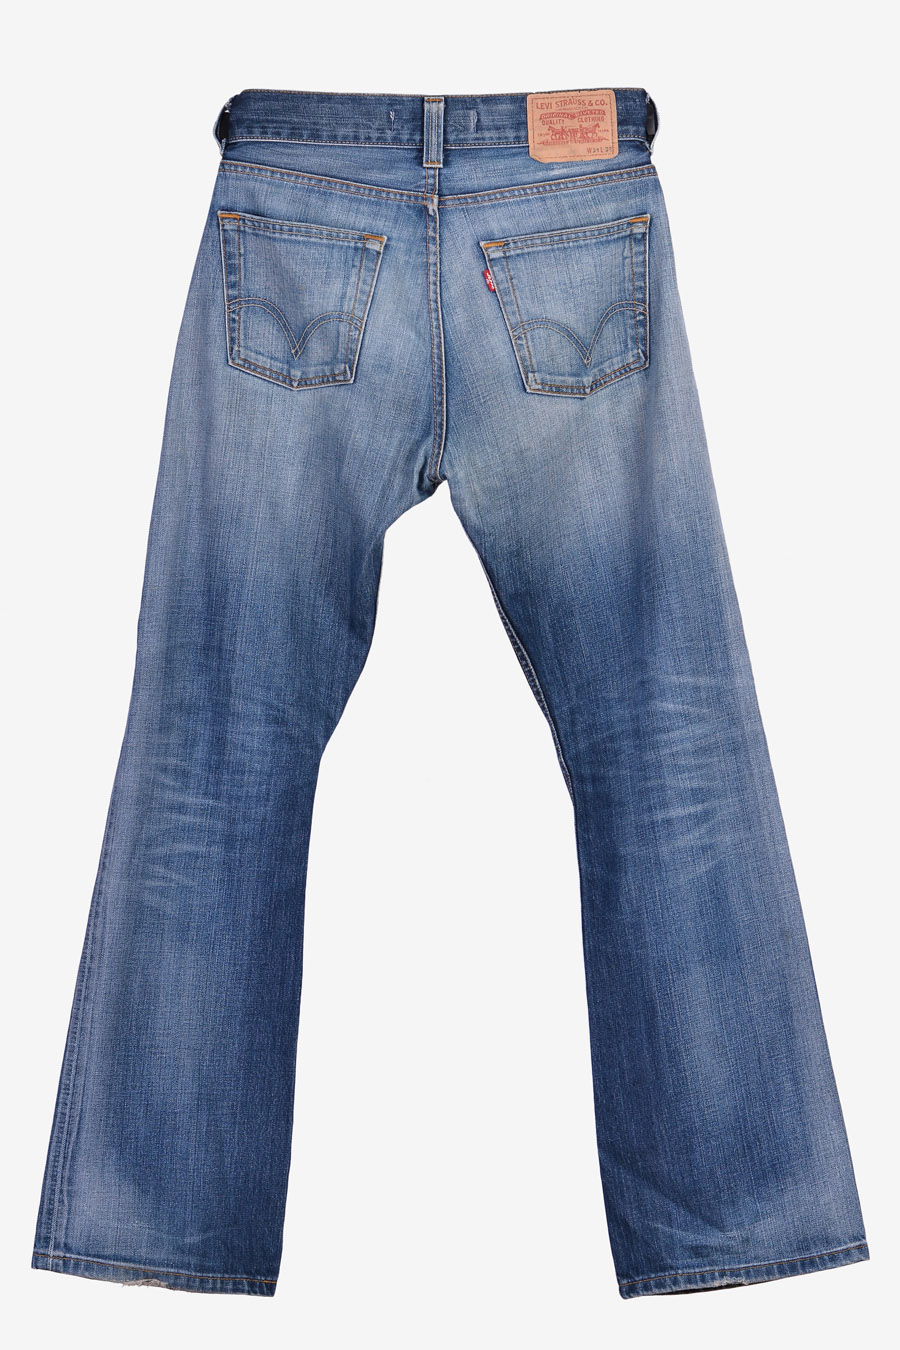 Vintage Levi's 512 Jeans | Size 32/34 - Brick Vintage